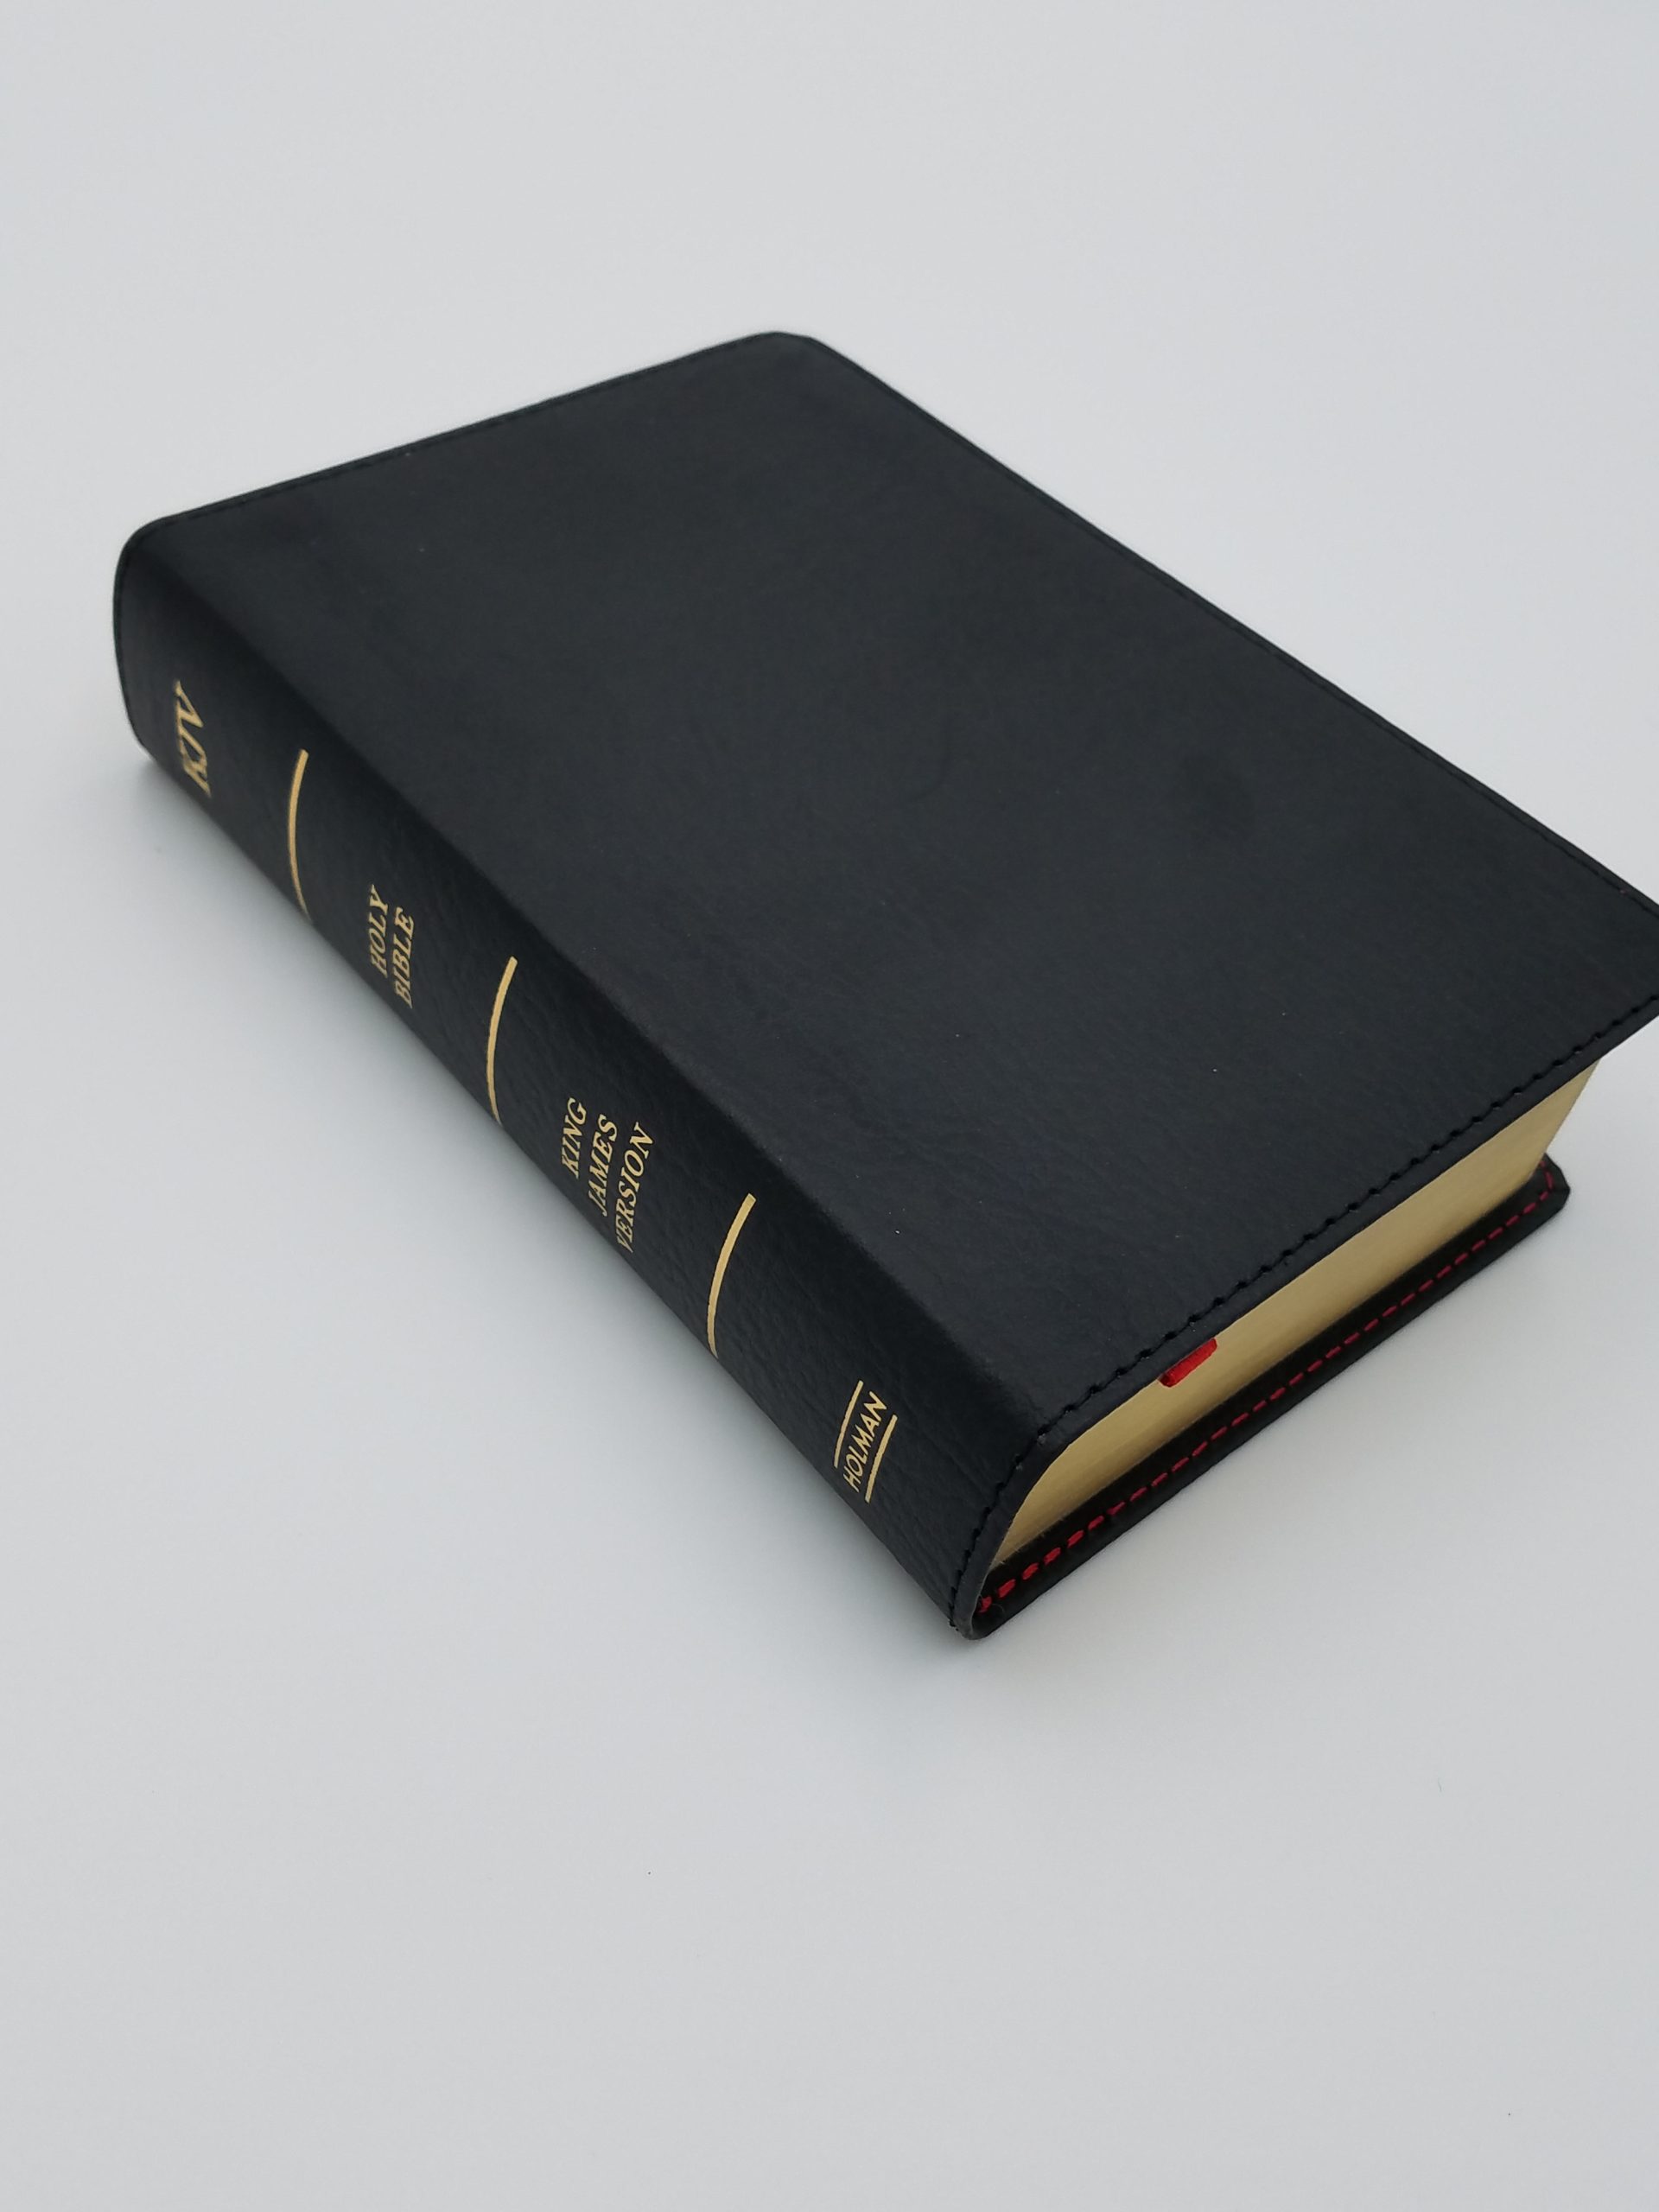 KJV Bible – Hursh's Country Store